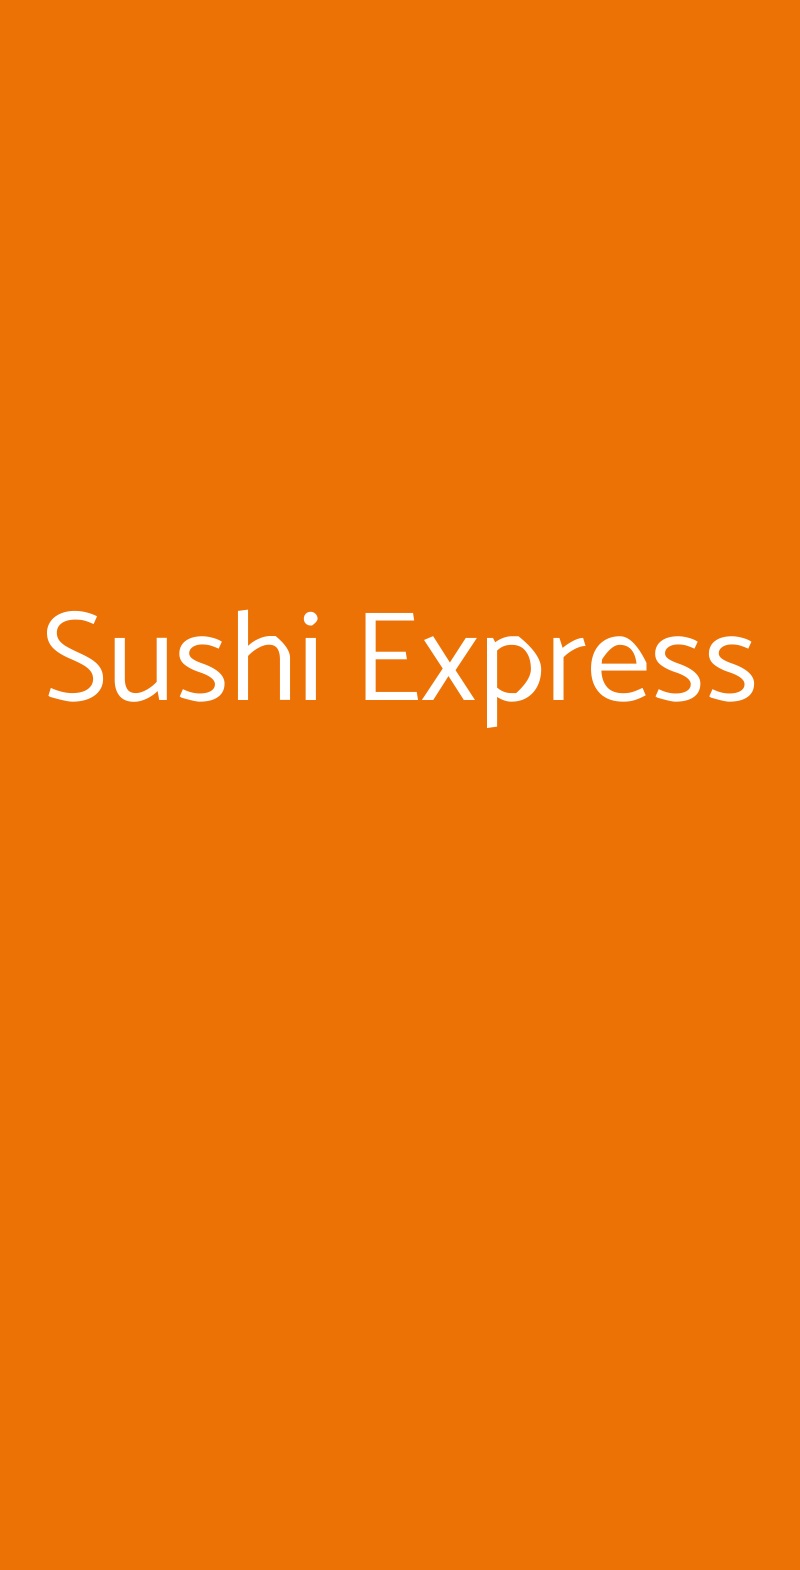 Sushi Express Milano menù 1 pagina